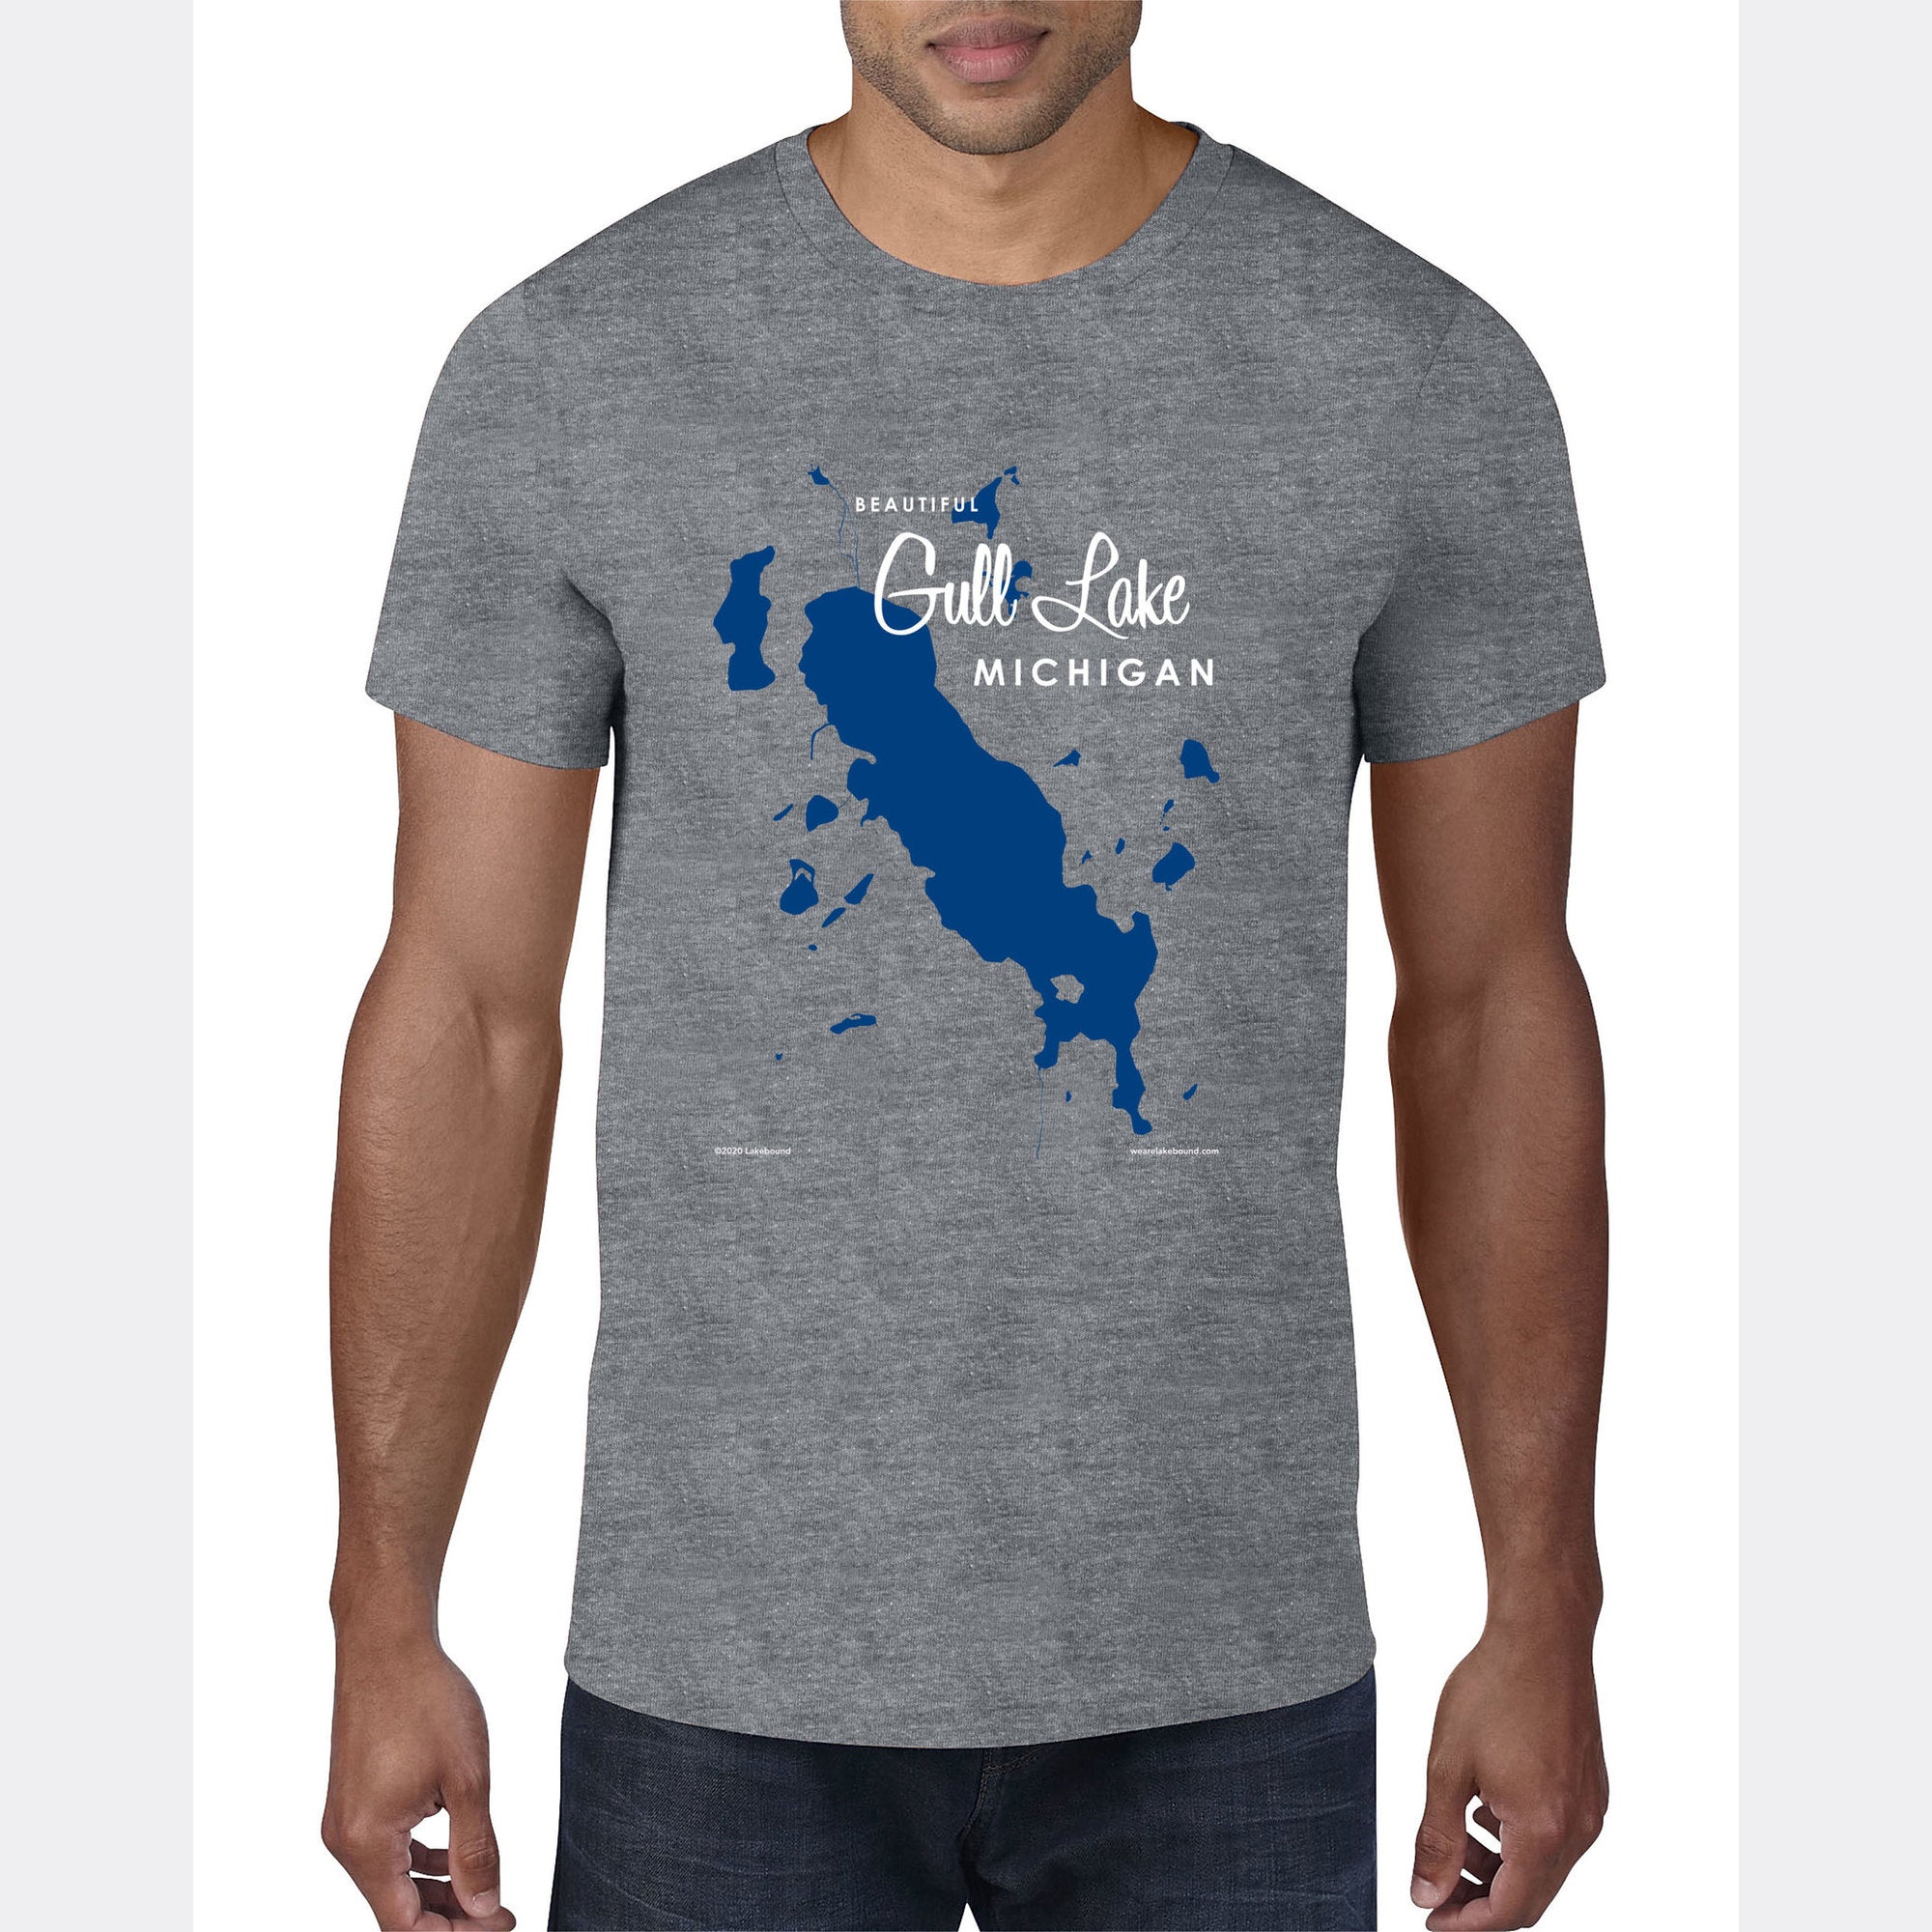 Gull Lake Michigan, T-Shirt